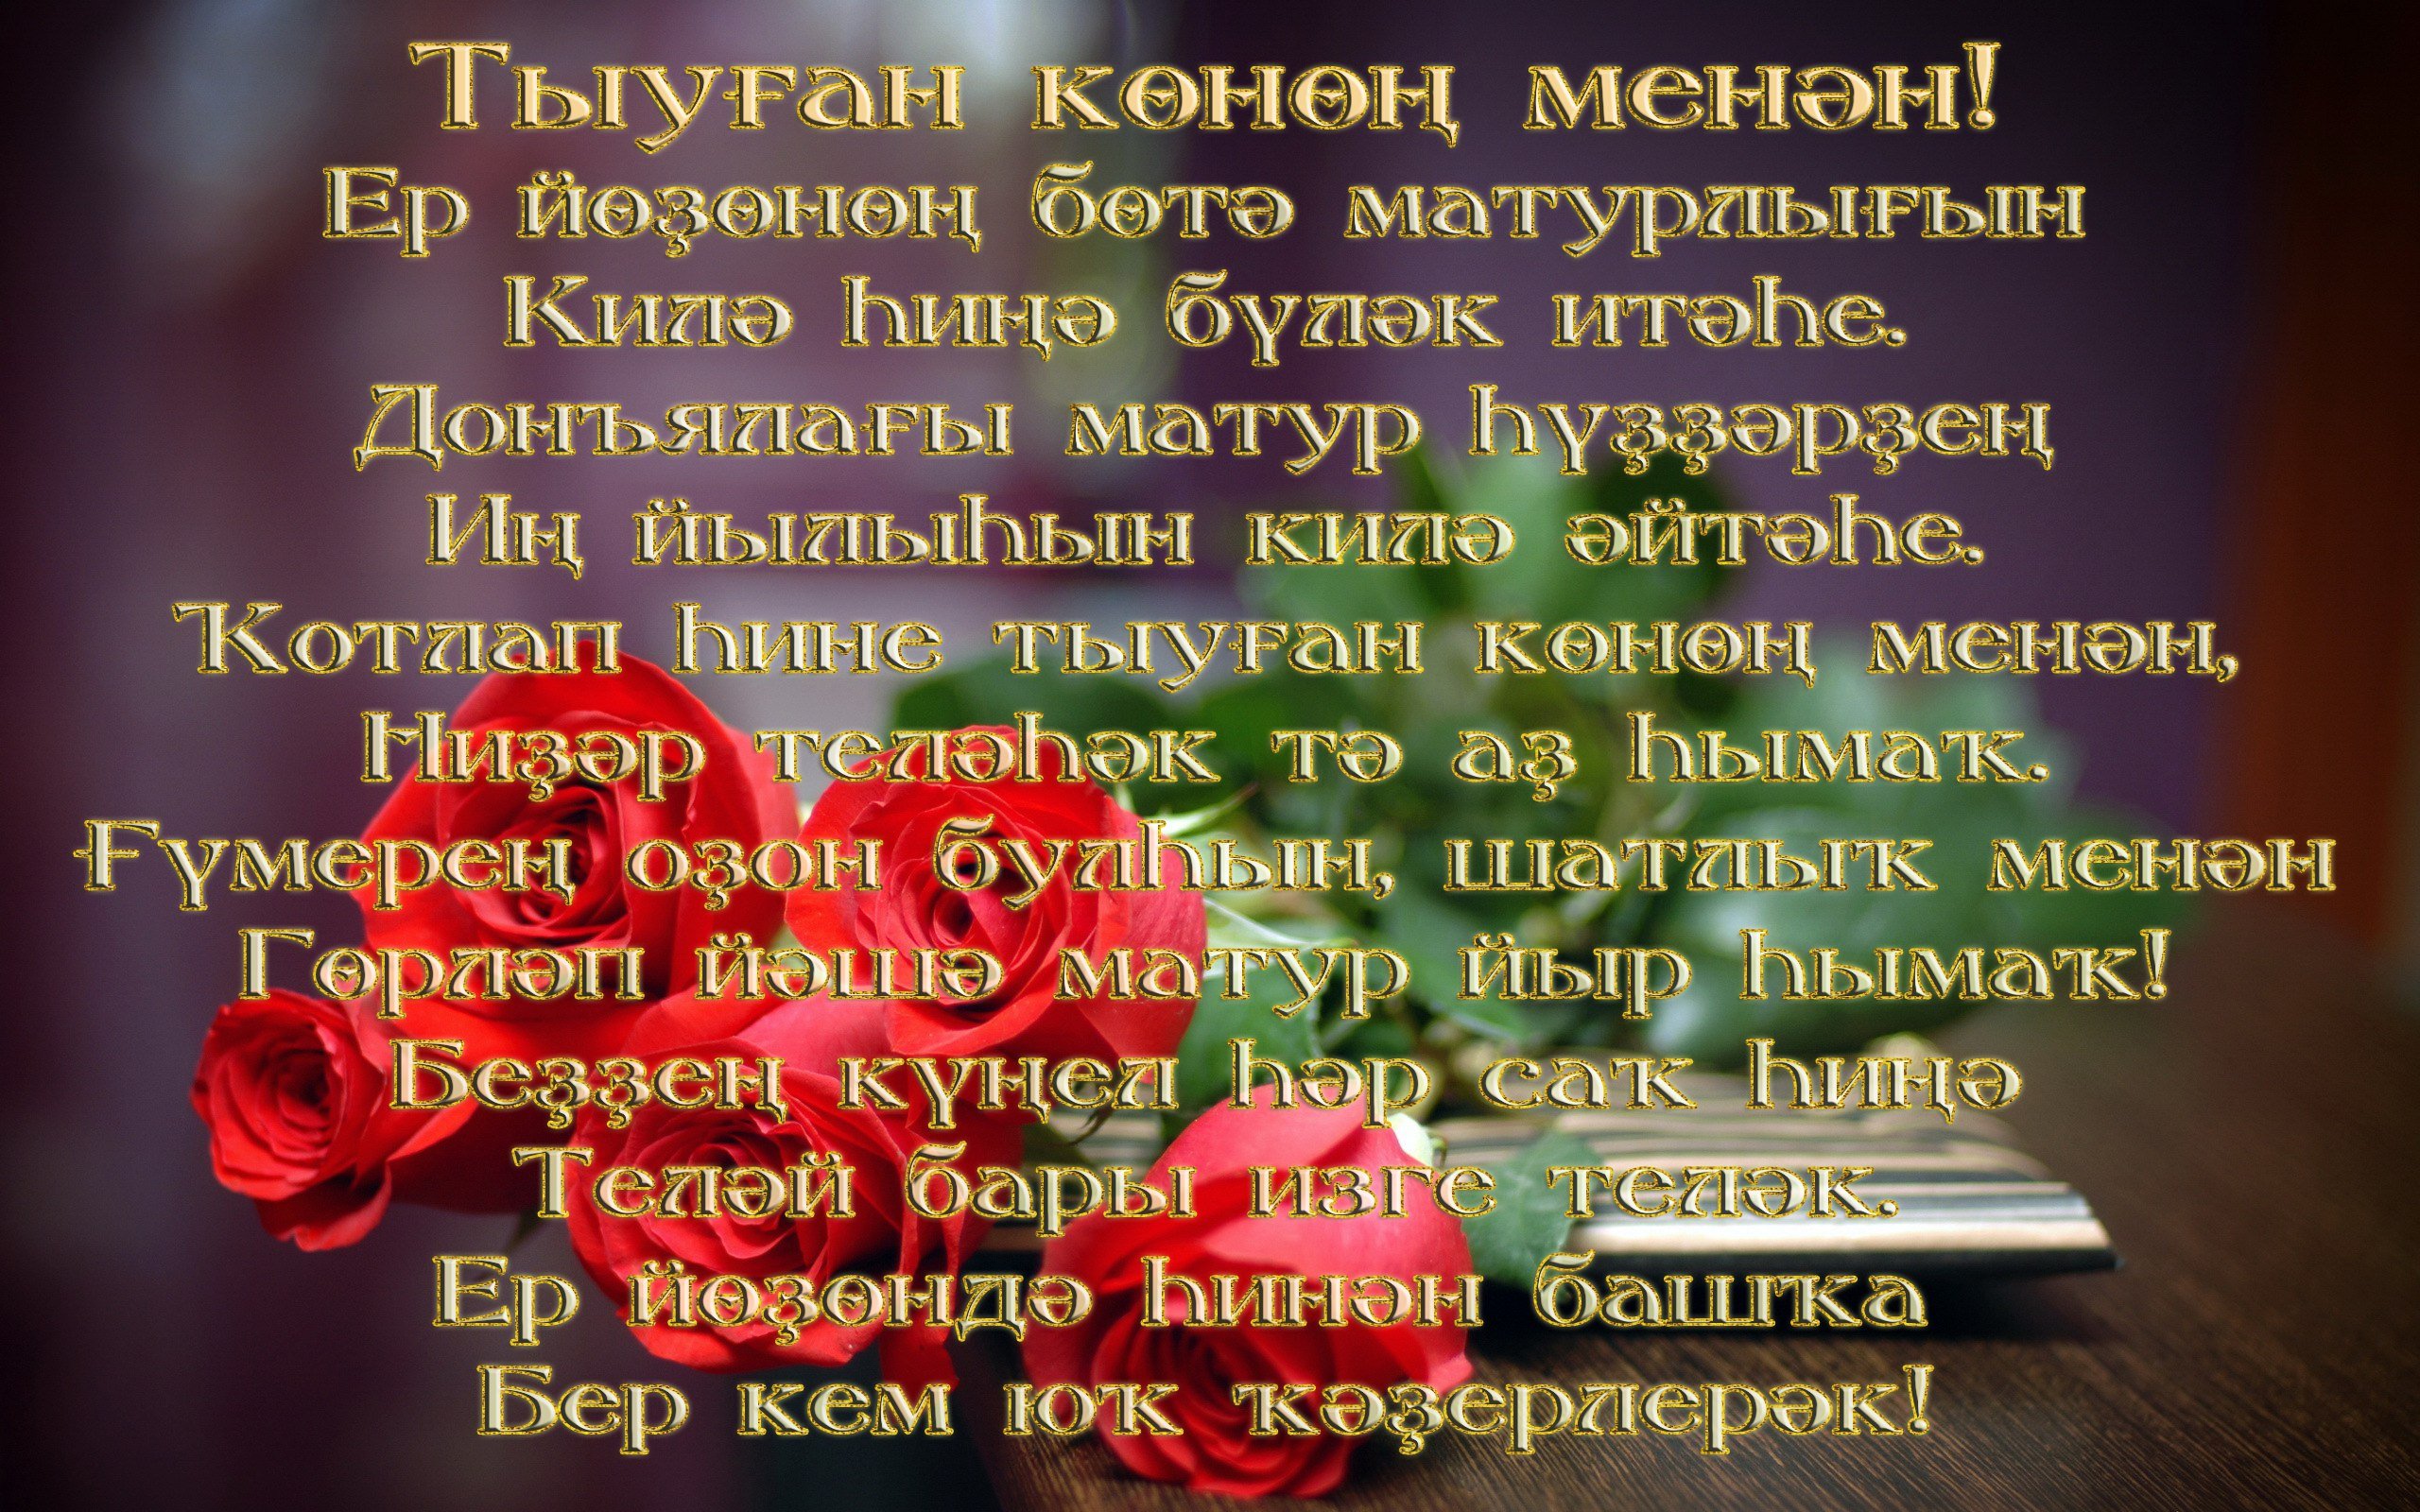 Поздравление на башкирском языке маме. Поздравления на башкирском. Поздравления с днём рождения на башкирском языке. Поздравления башкирском языке женщине. Поздравление с юбилеем на башкирском.